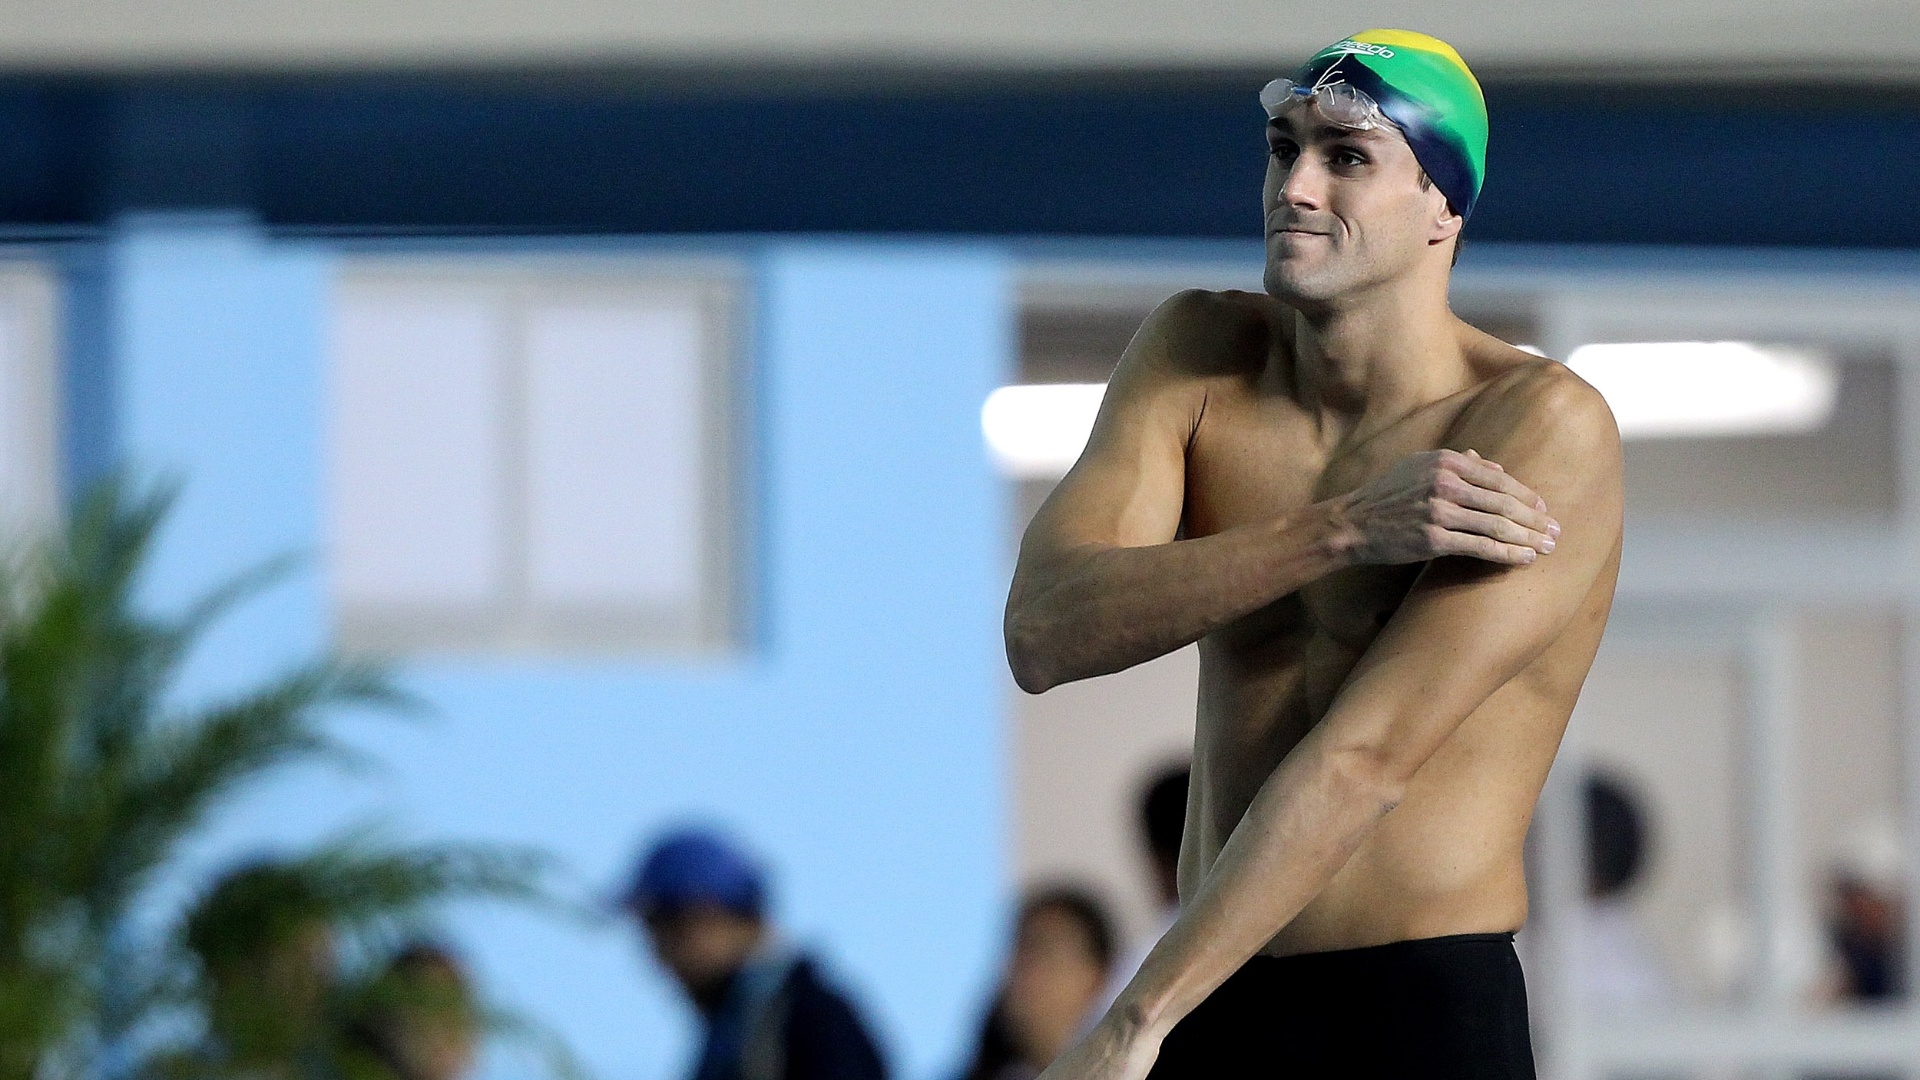 O brasileiro André Schultz se aquece antes da disputa das eliminatórias dos 200 m livre (18/10/2011)